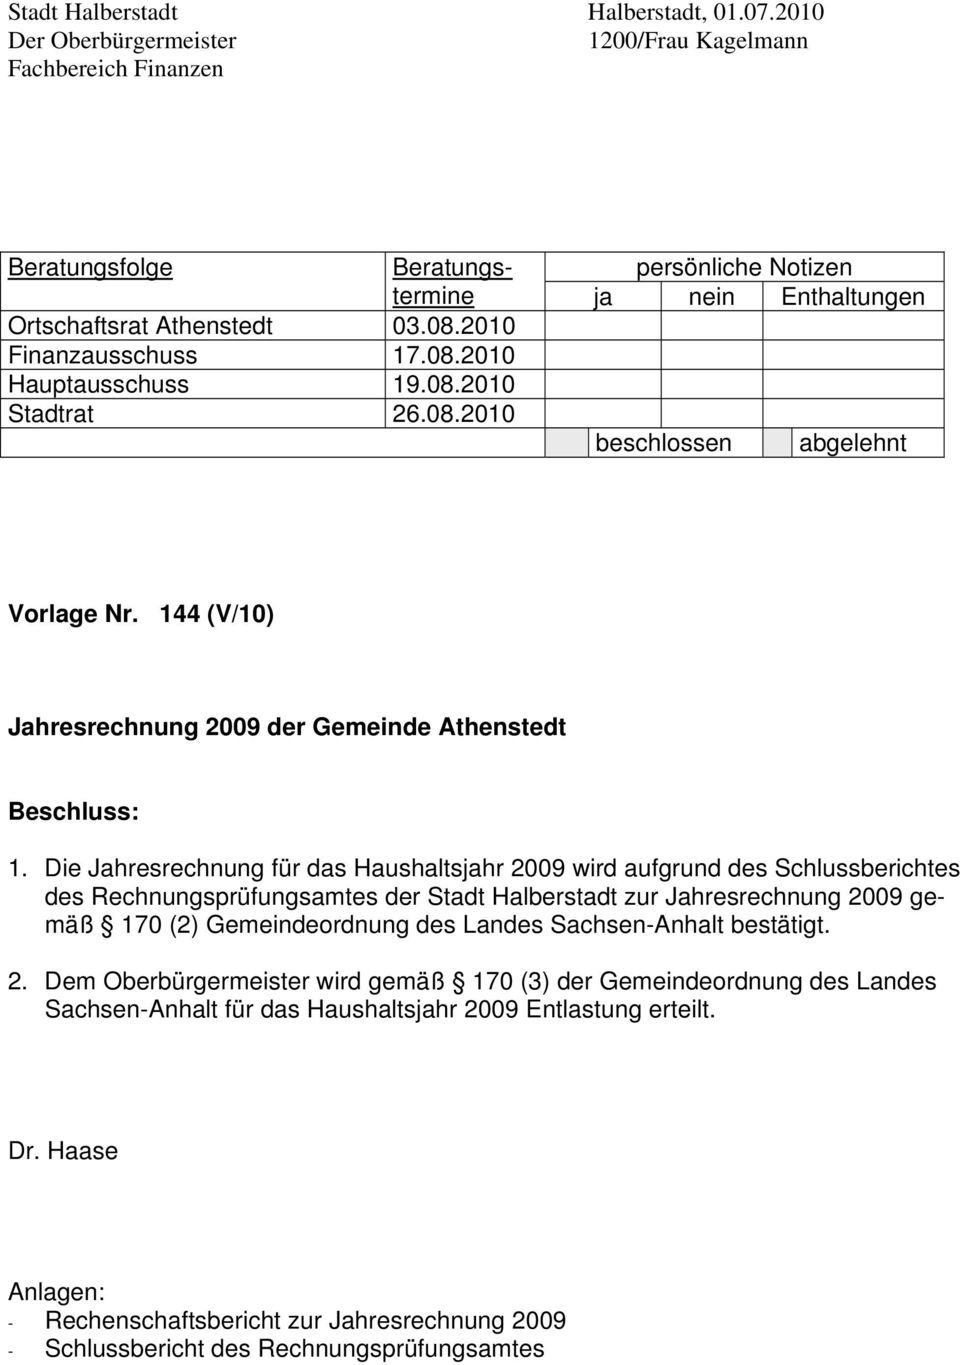 Die Jahresrechnung für das Haushaltsjahr 2009 wird aufgrund des Schlussberichtes des Rechnungsprüfungsamtes der Stadt Halberstadt zur Jahresrechnung 2009 gemäß 170 (2) Gemeindeordnung des Landes